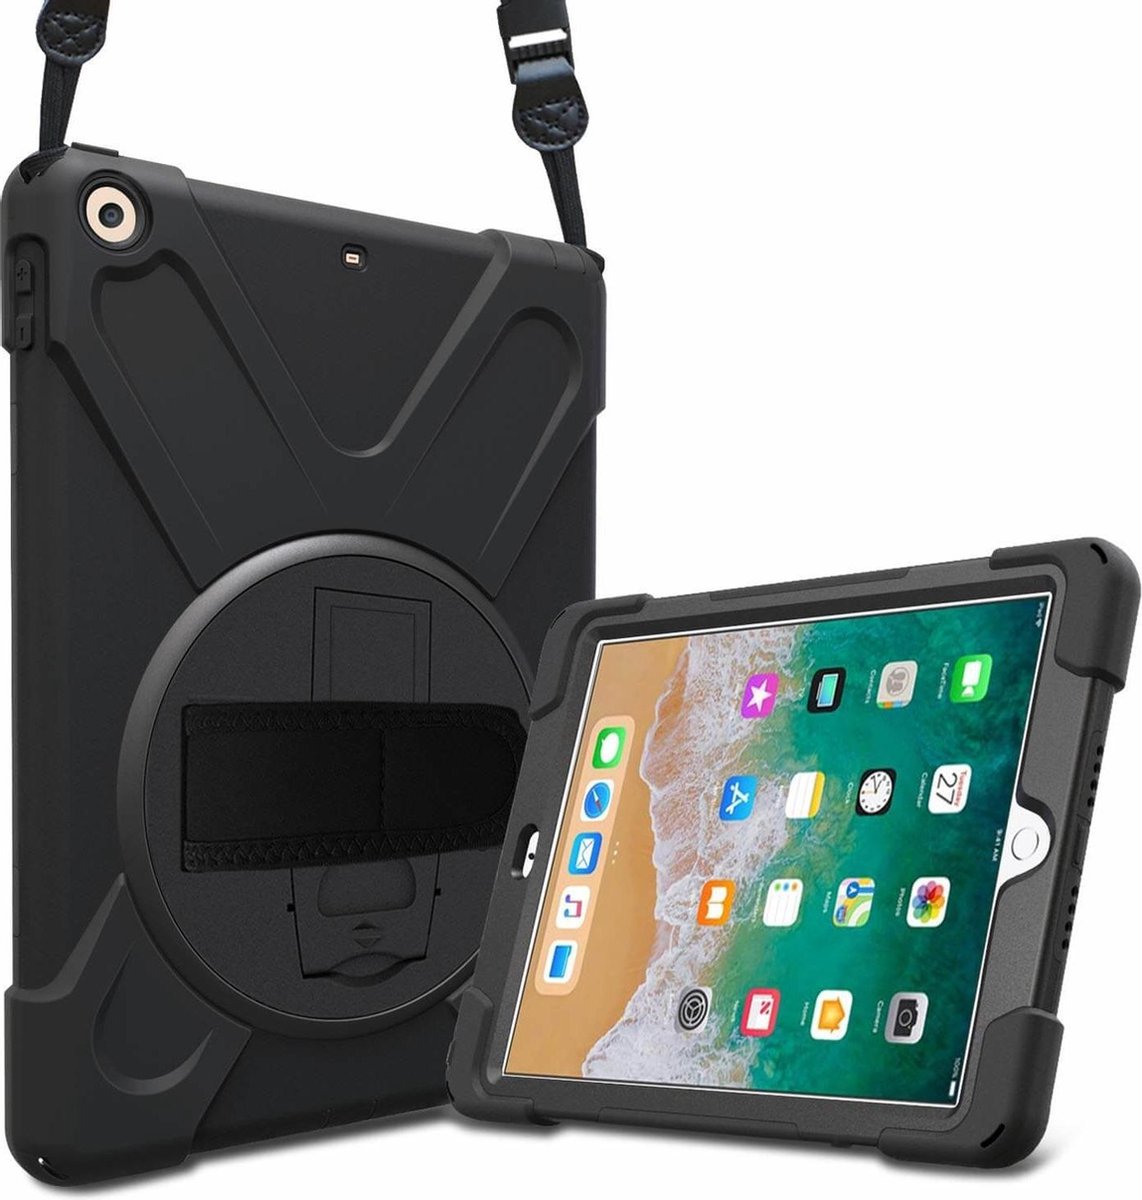 iPadspullekes - Apple iPad 2019 (10.2 inch) Protector Case - Robuuste Stootvaste Beschermhoes - Hoes met Handvat, Schouderriem en Penhouder - Zwart